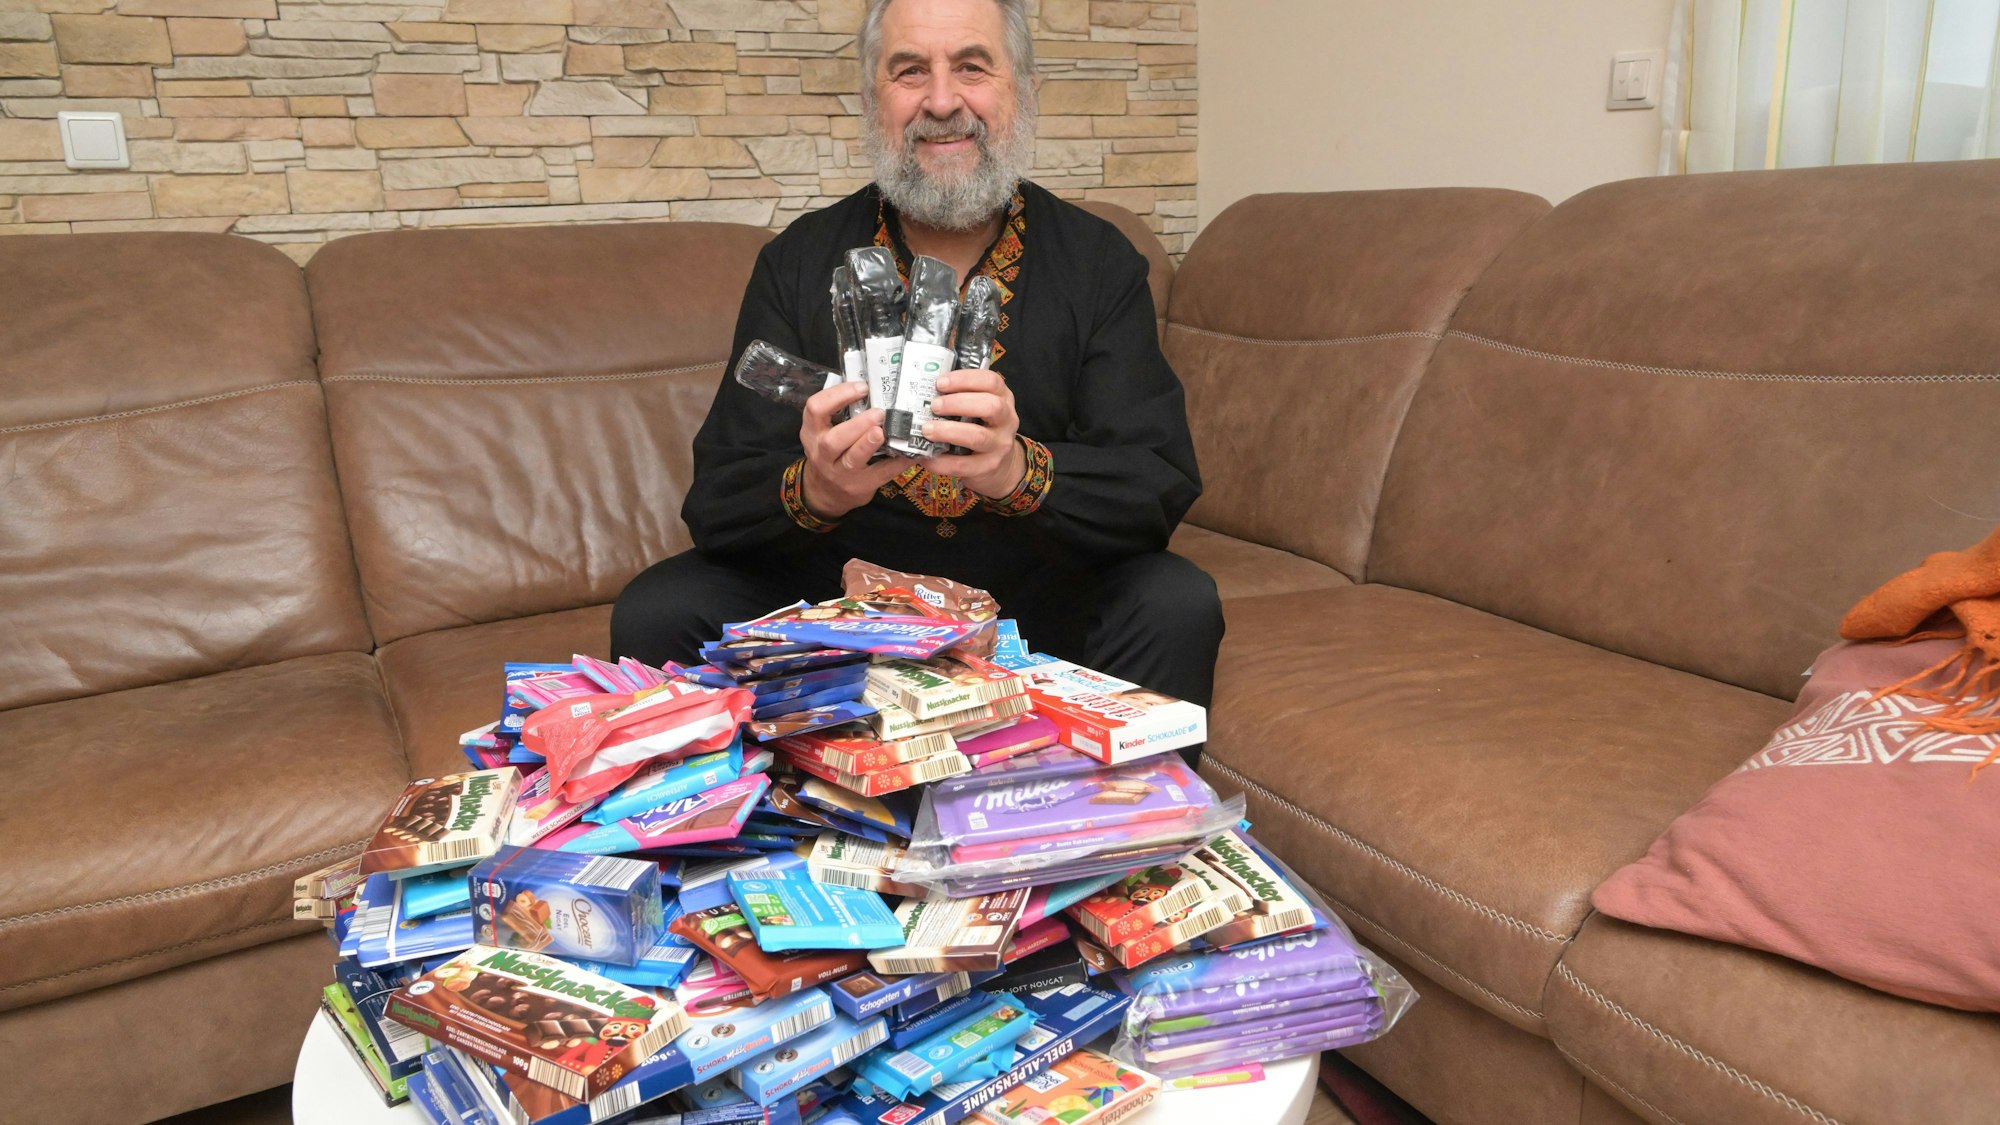 Paul sitzt auf dem Wohnzimmersofa und zeigt medizinische Armbinden und Süßigkeiten, die er mit in die Ukraine nimmt.